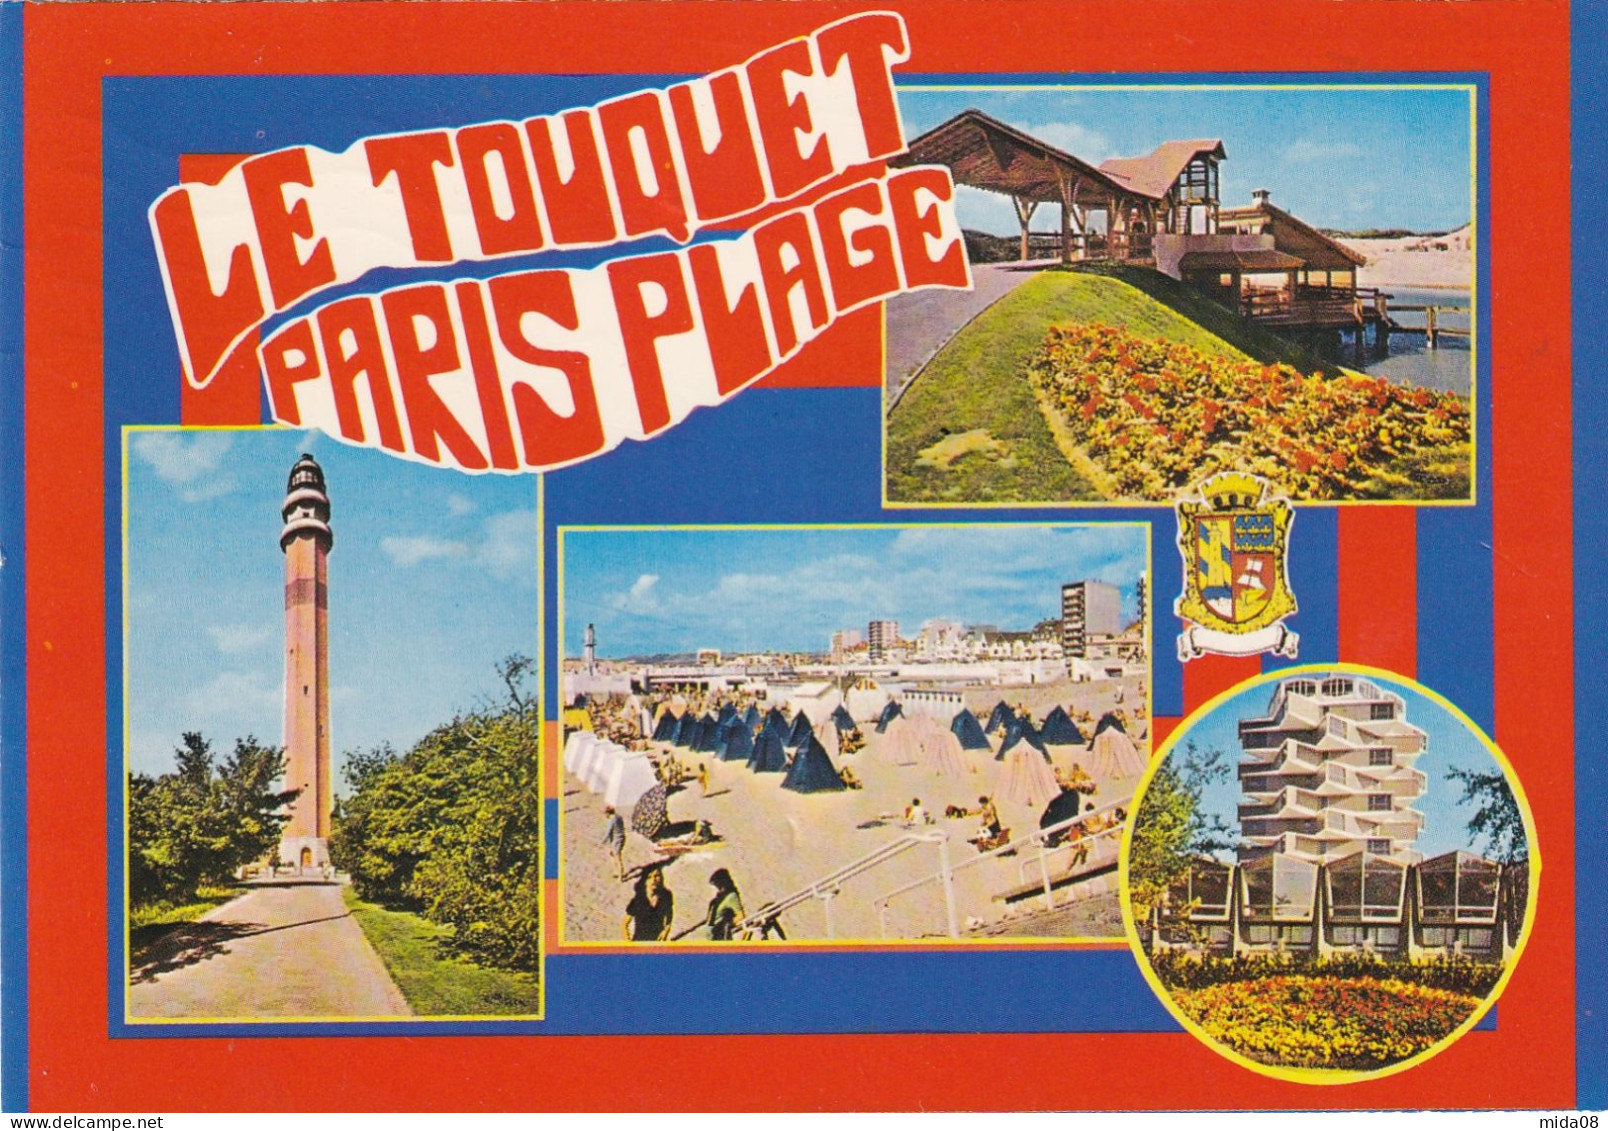 Sur Carte Postale De Le Touquet PARIS Plage .timbres Taxe à 0,30 Et O,10 . Taxée à RAUCOURT ET FLABA En 1981 - 1960-.... Afgestempeld